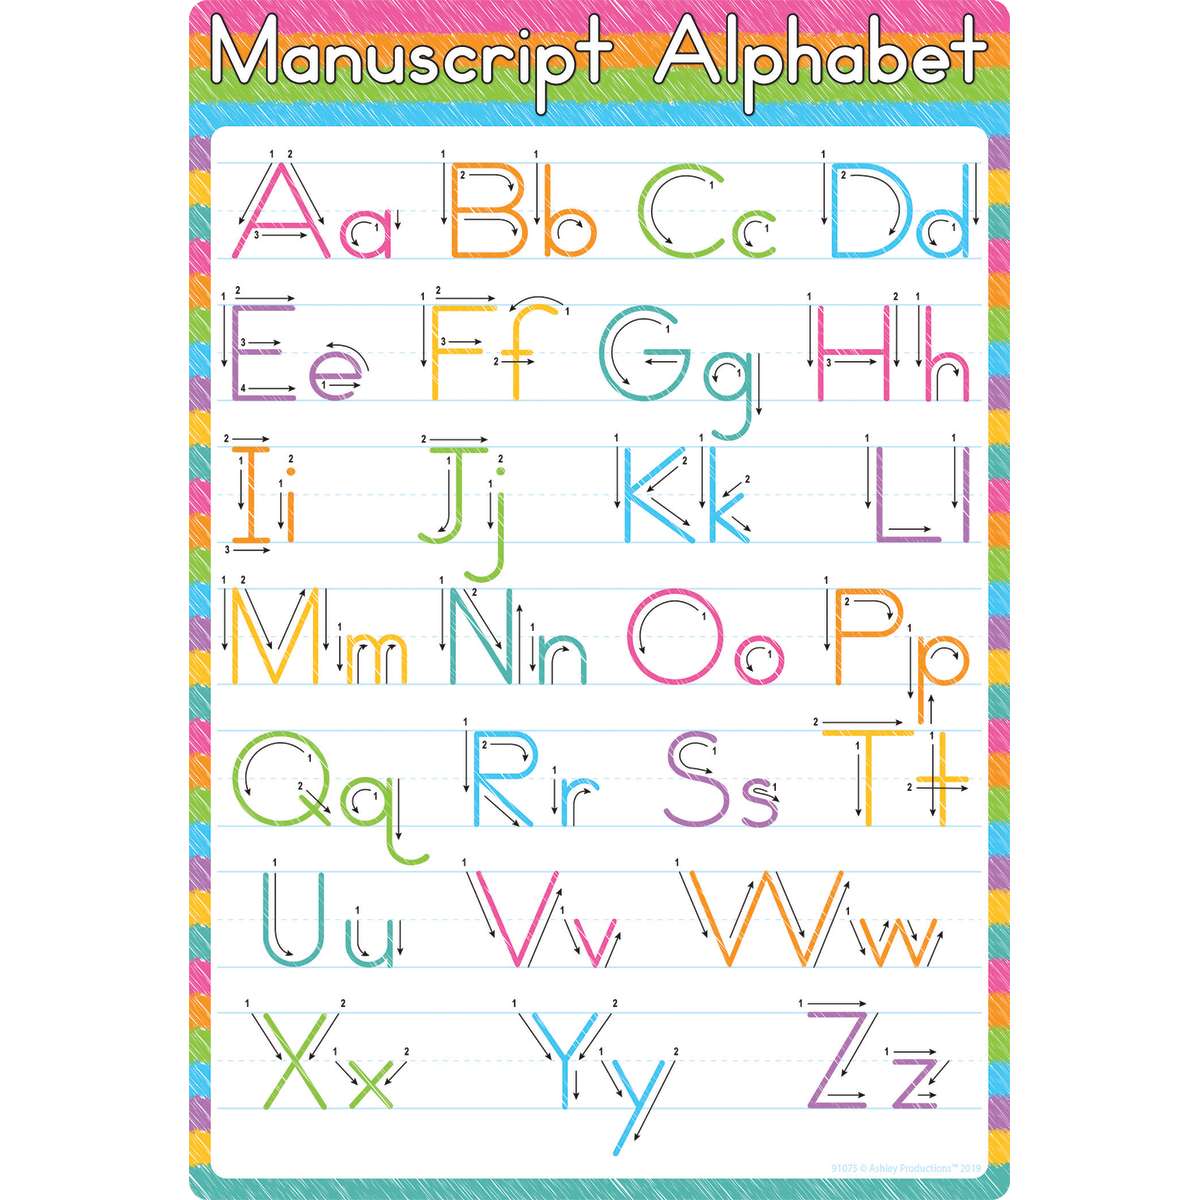 english alphabet spelled in manuscript